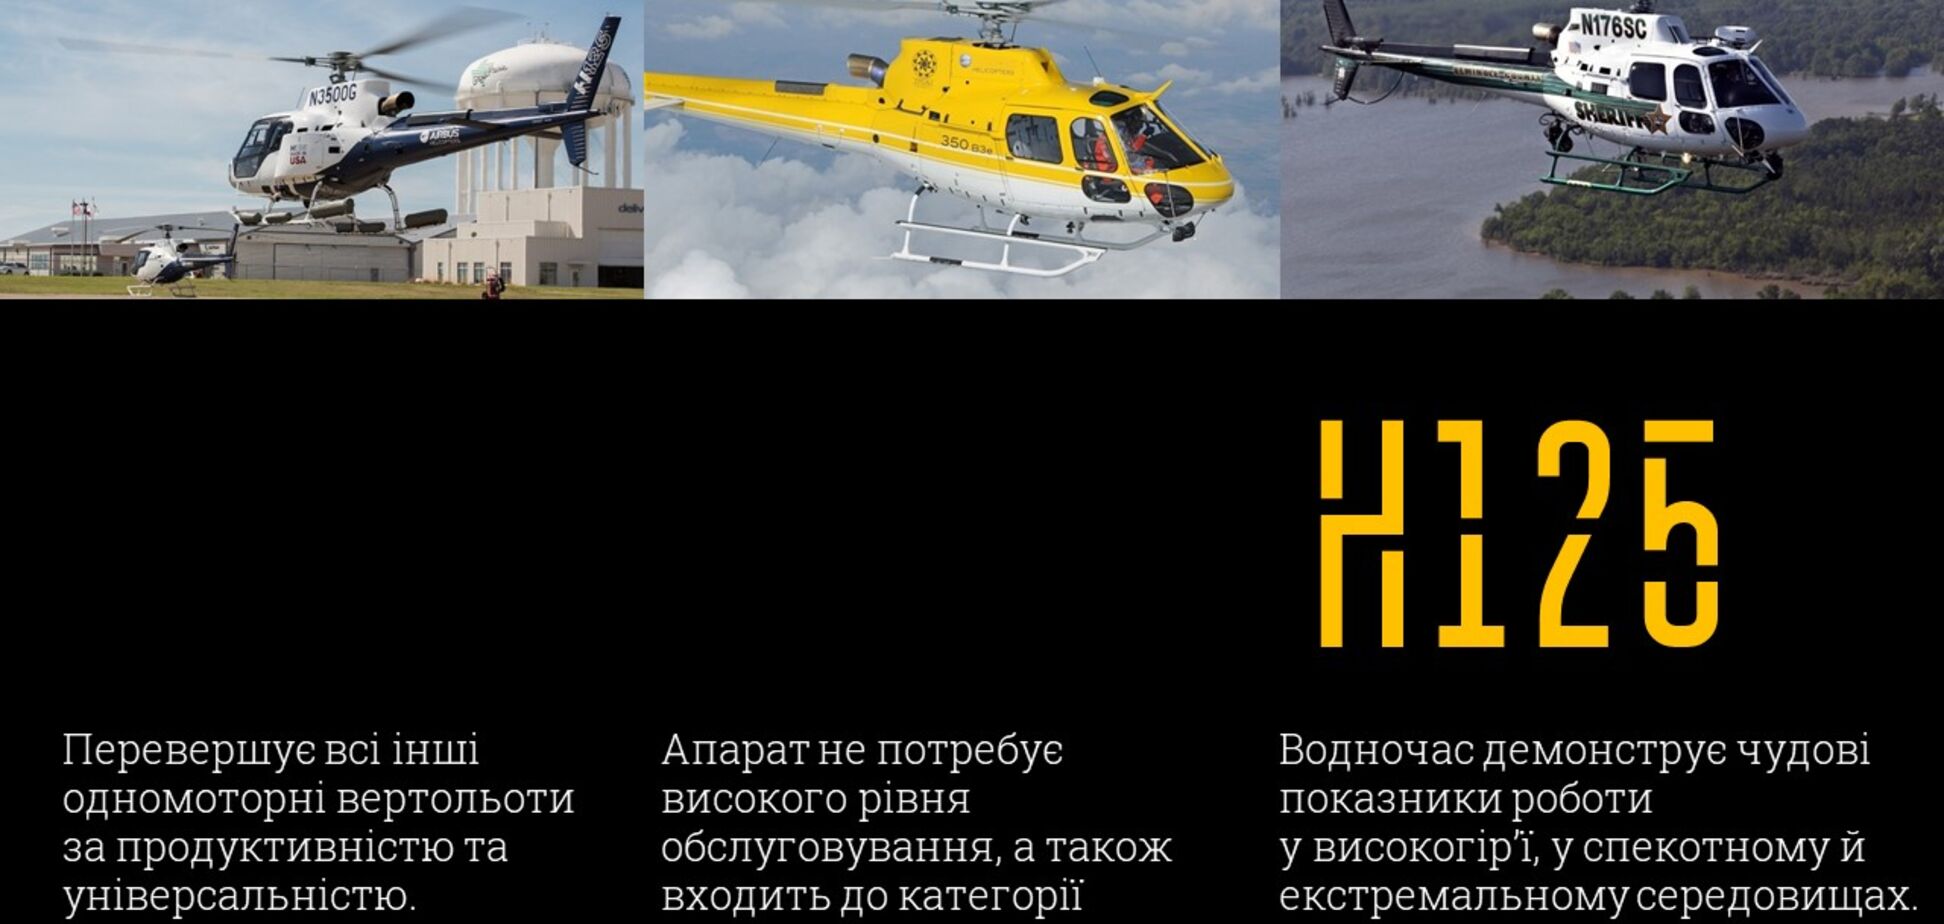 Українська поліція буде літати на нових гелікоптерах